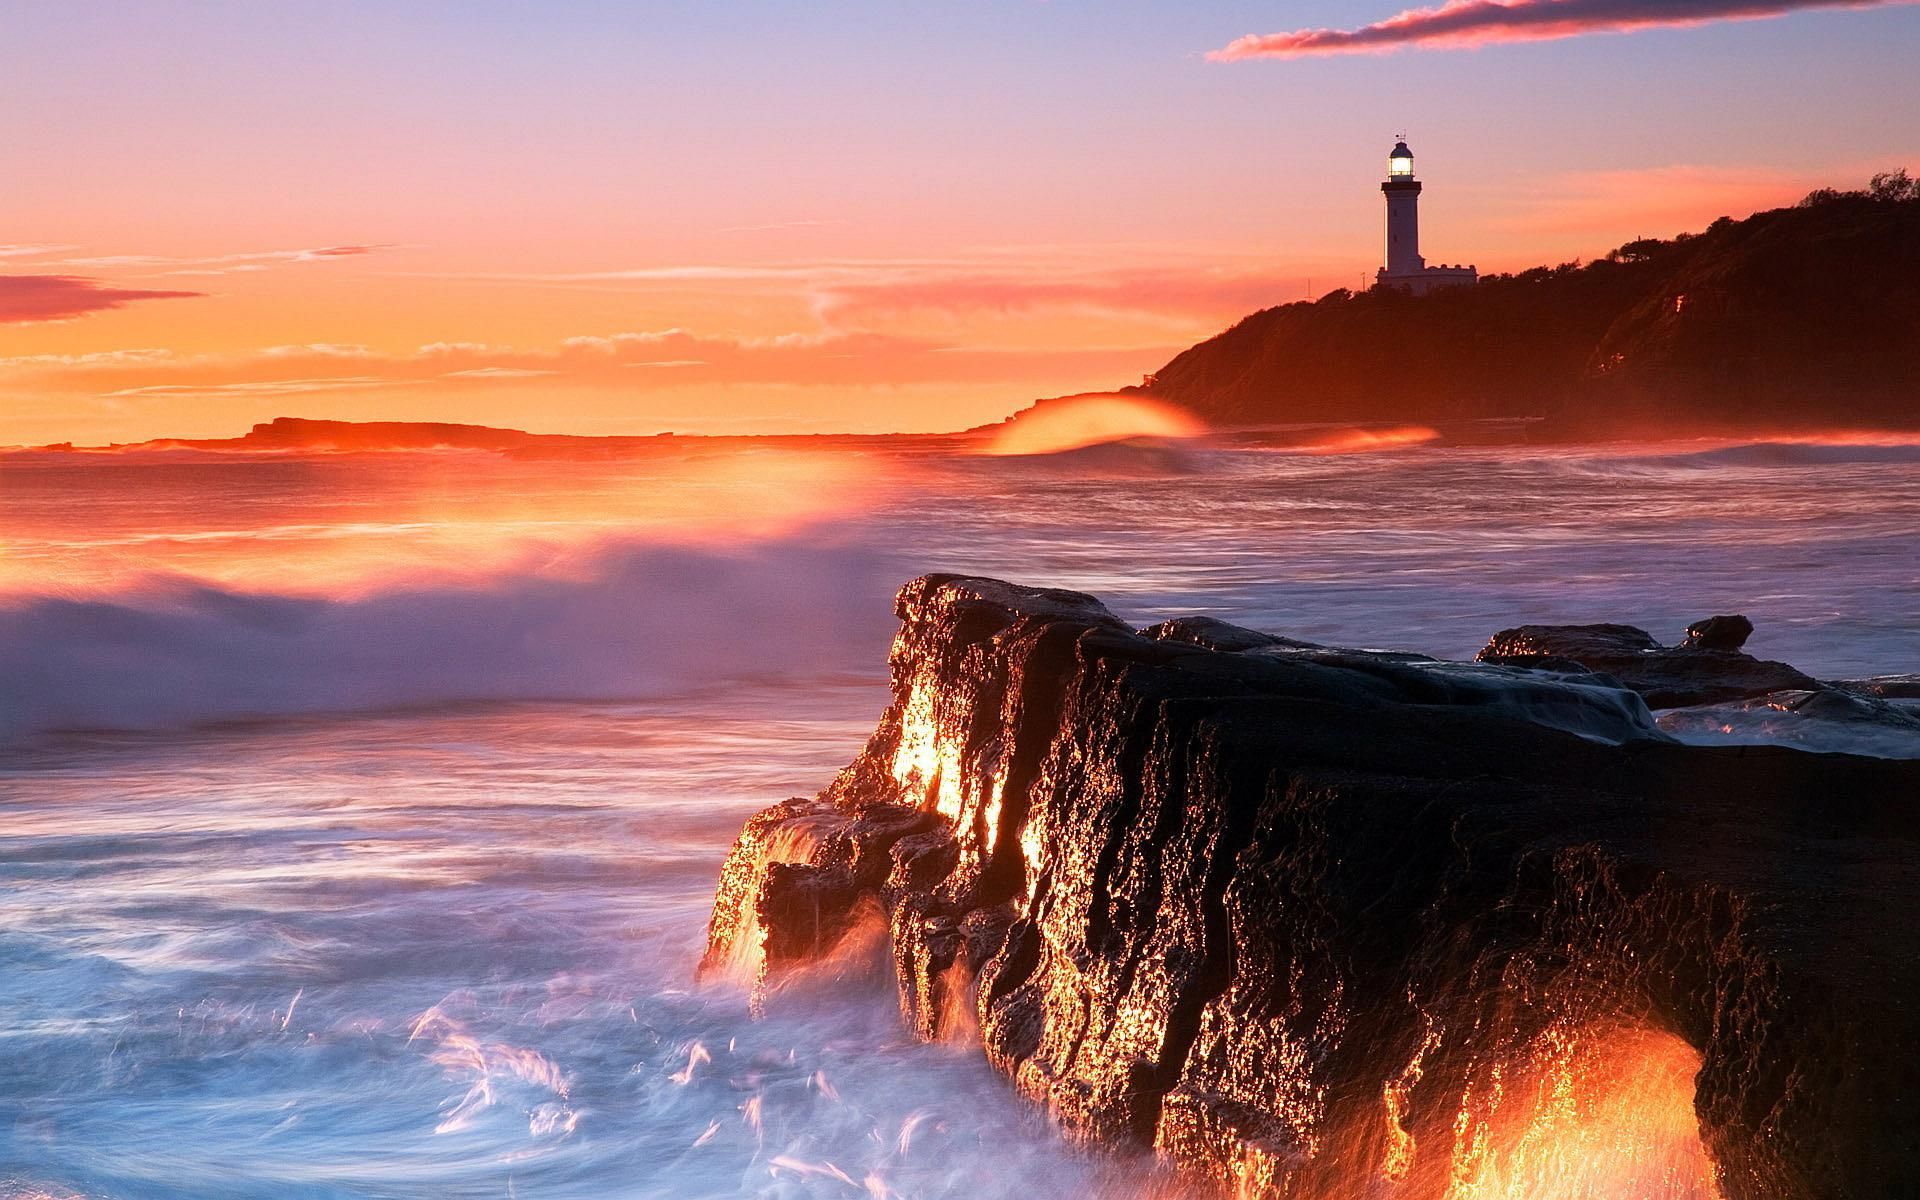 Lighthouse Sunset Wallpaper. Beach sunset wallpaper, Lighthouse